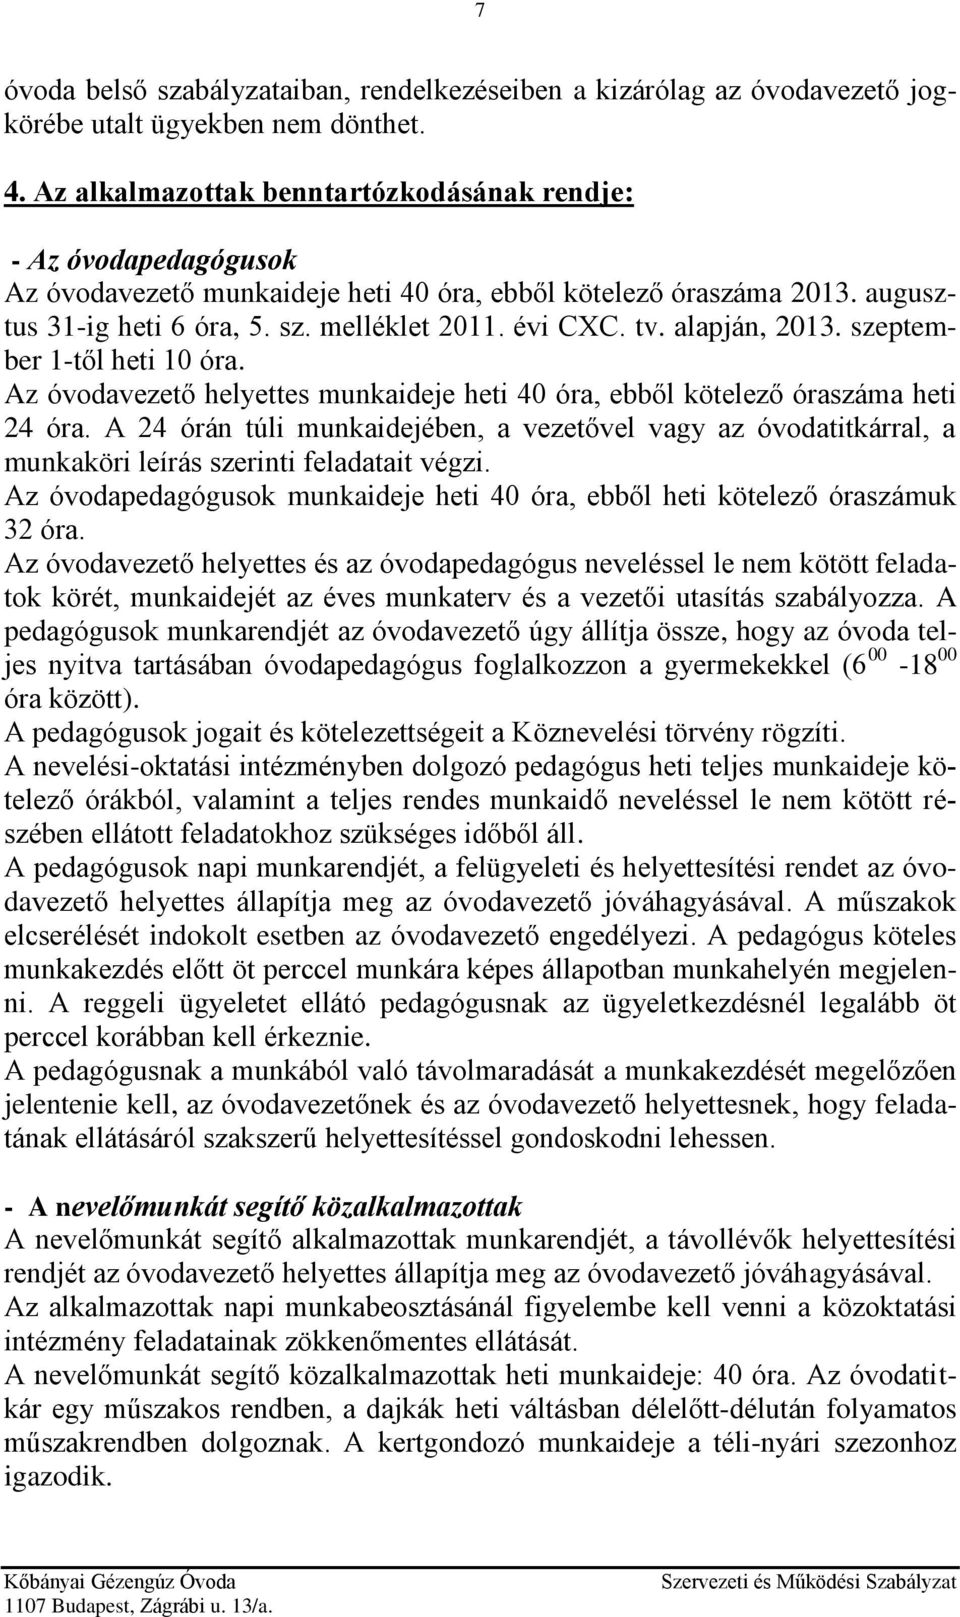 Kőbányai Gézengúz Óvoda 1107 Budapest, Zágrábi u. 13/a. Szervezeti és  Működési Szabályzata - PDF Free Download